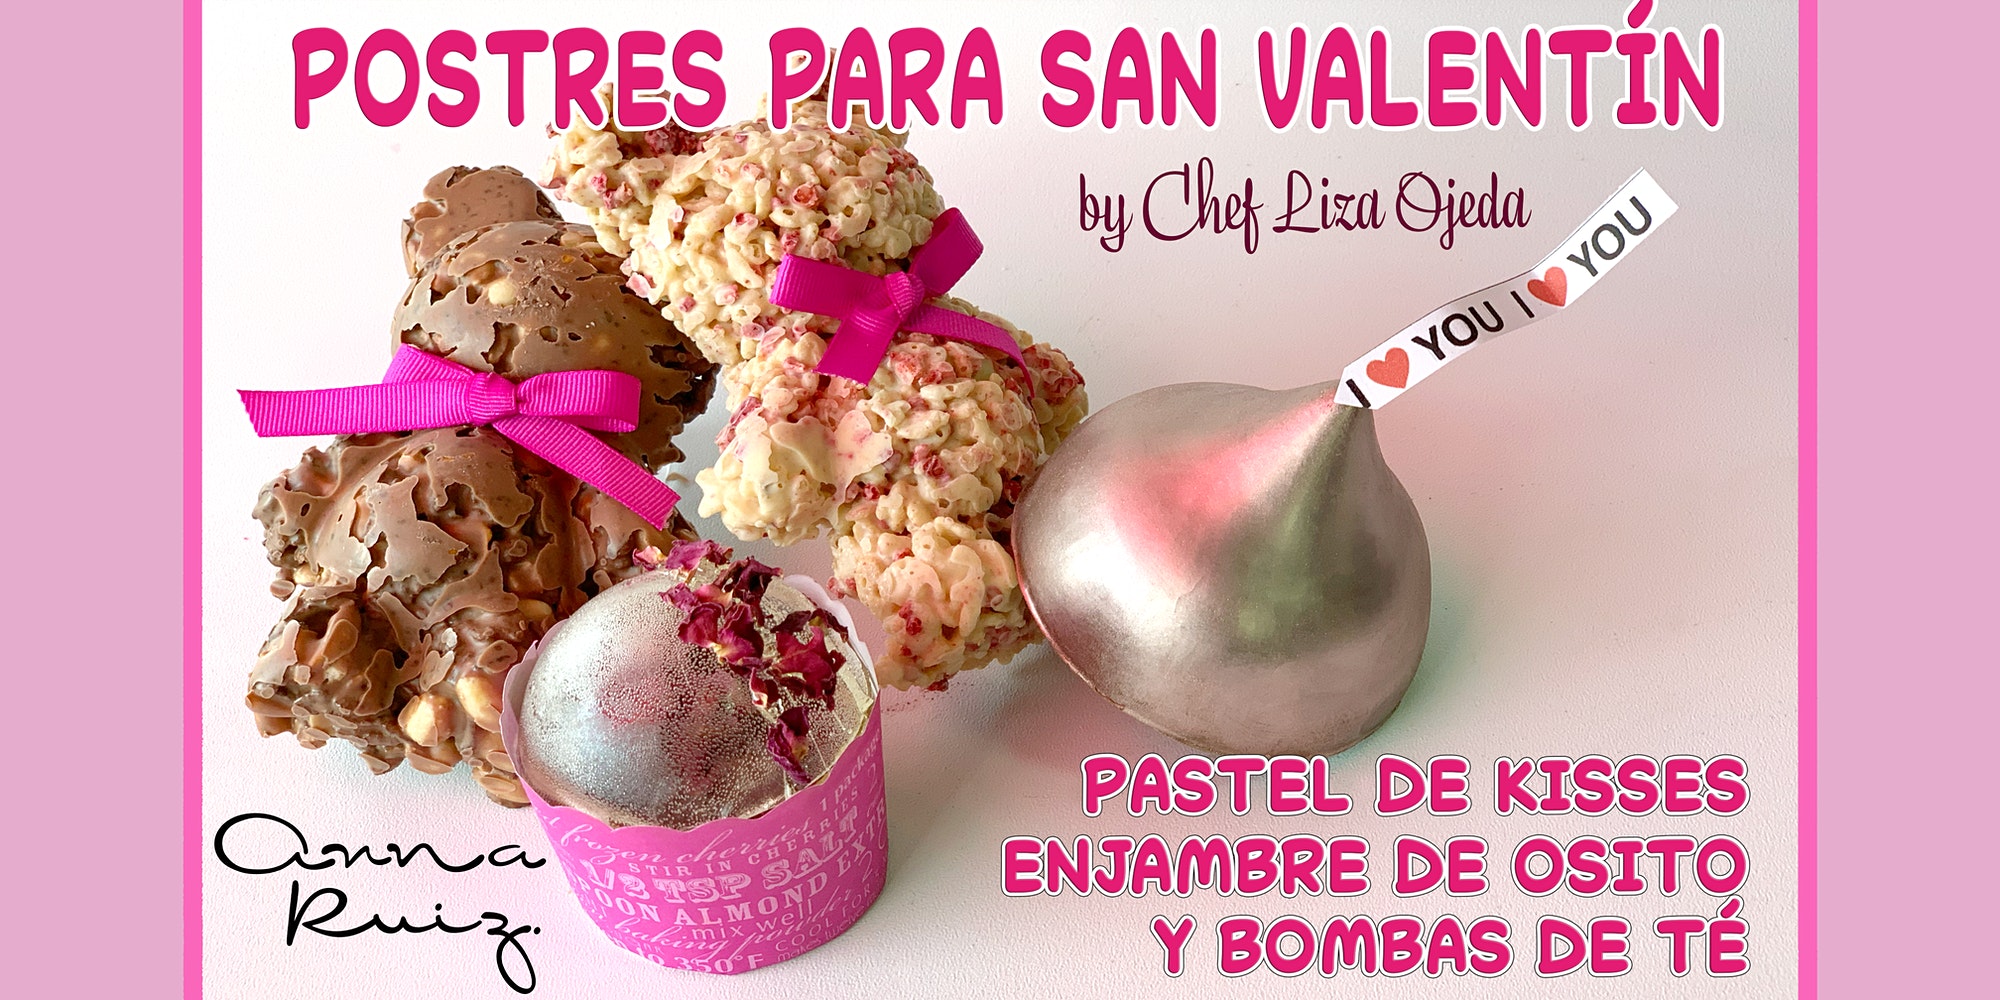 Clase Online “Postres para San Valentín” con Chef Liza Ojeda – Anna Ruiz